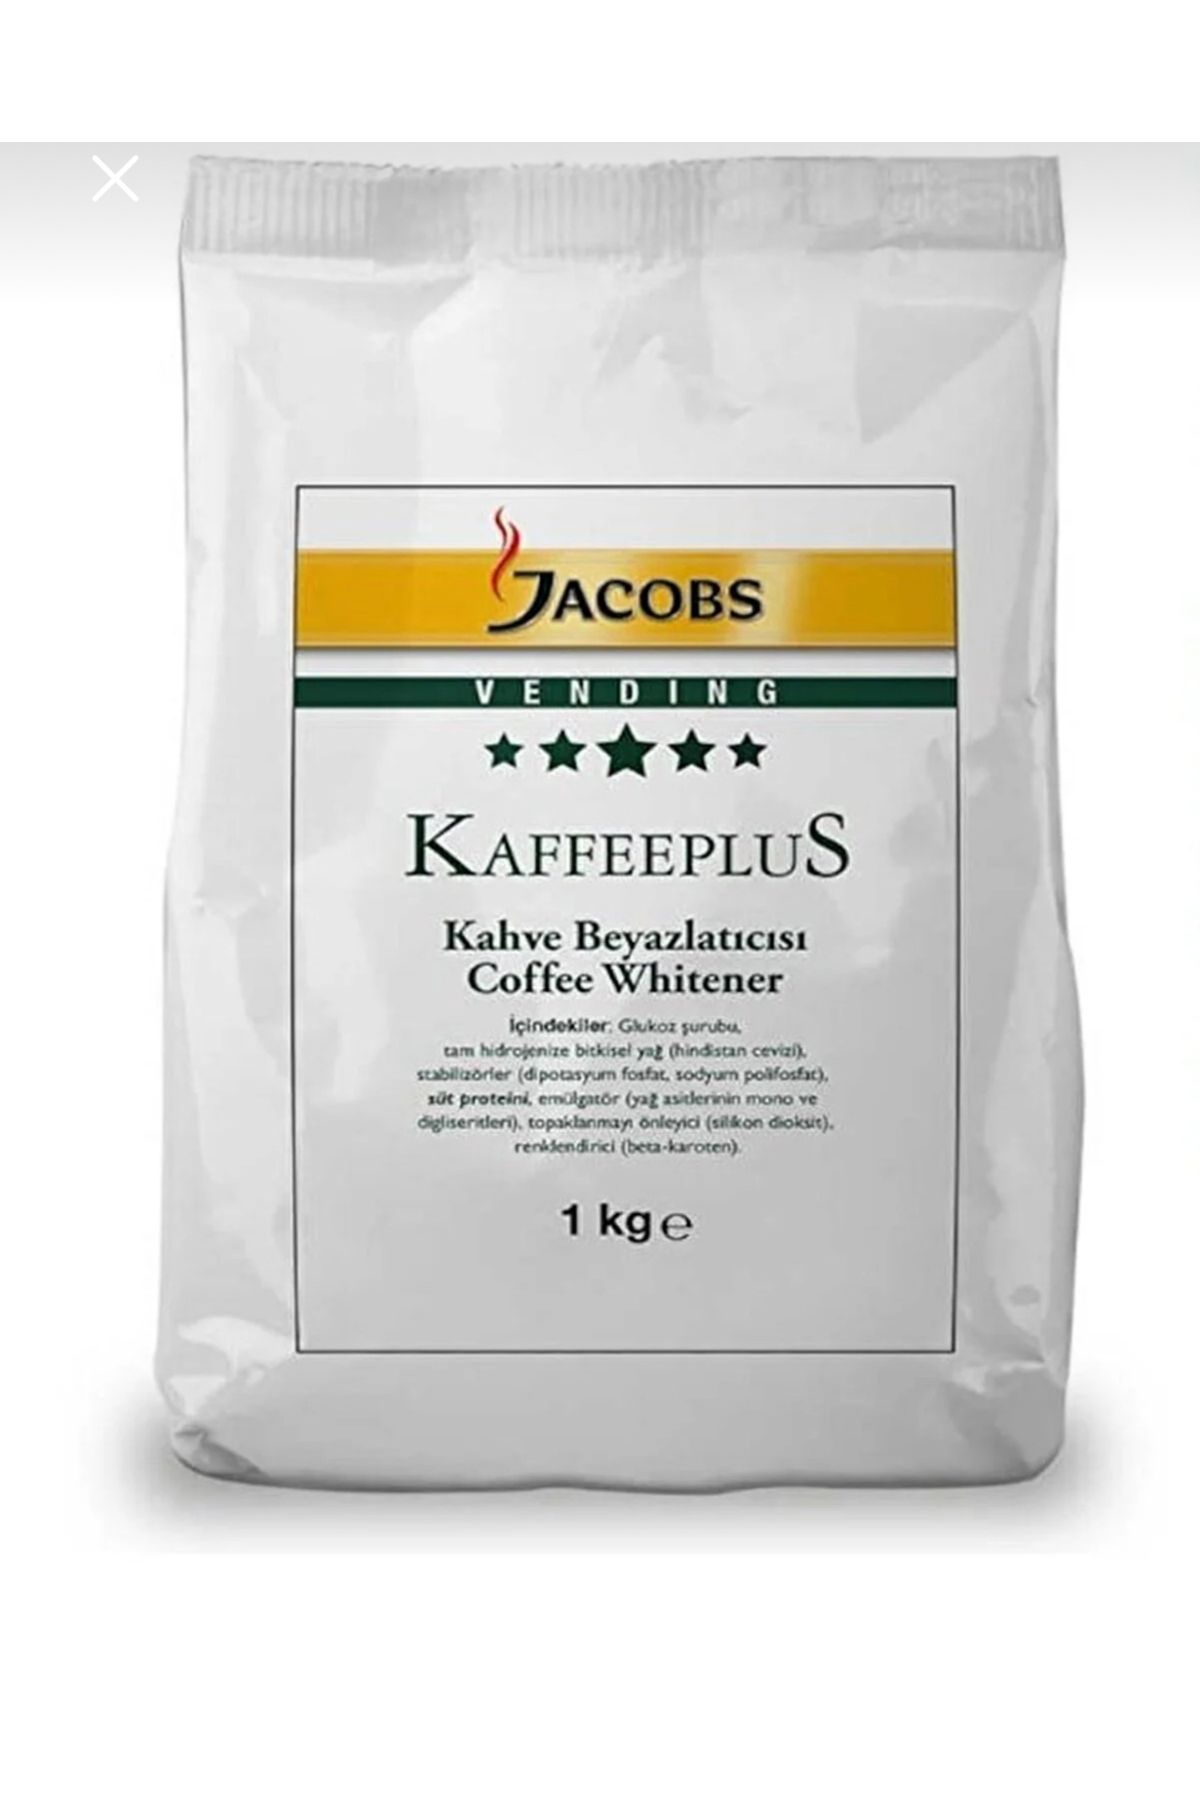 Jacobs kahve beyazlatıcısı 1kg